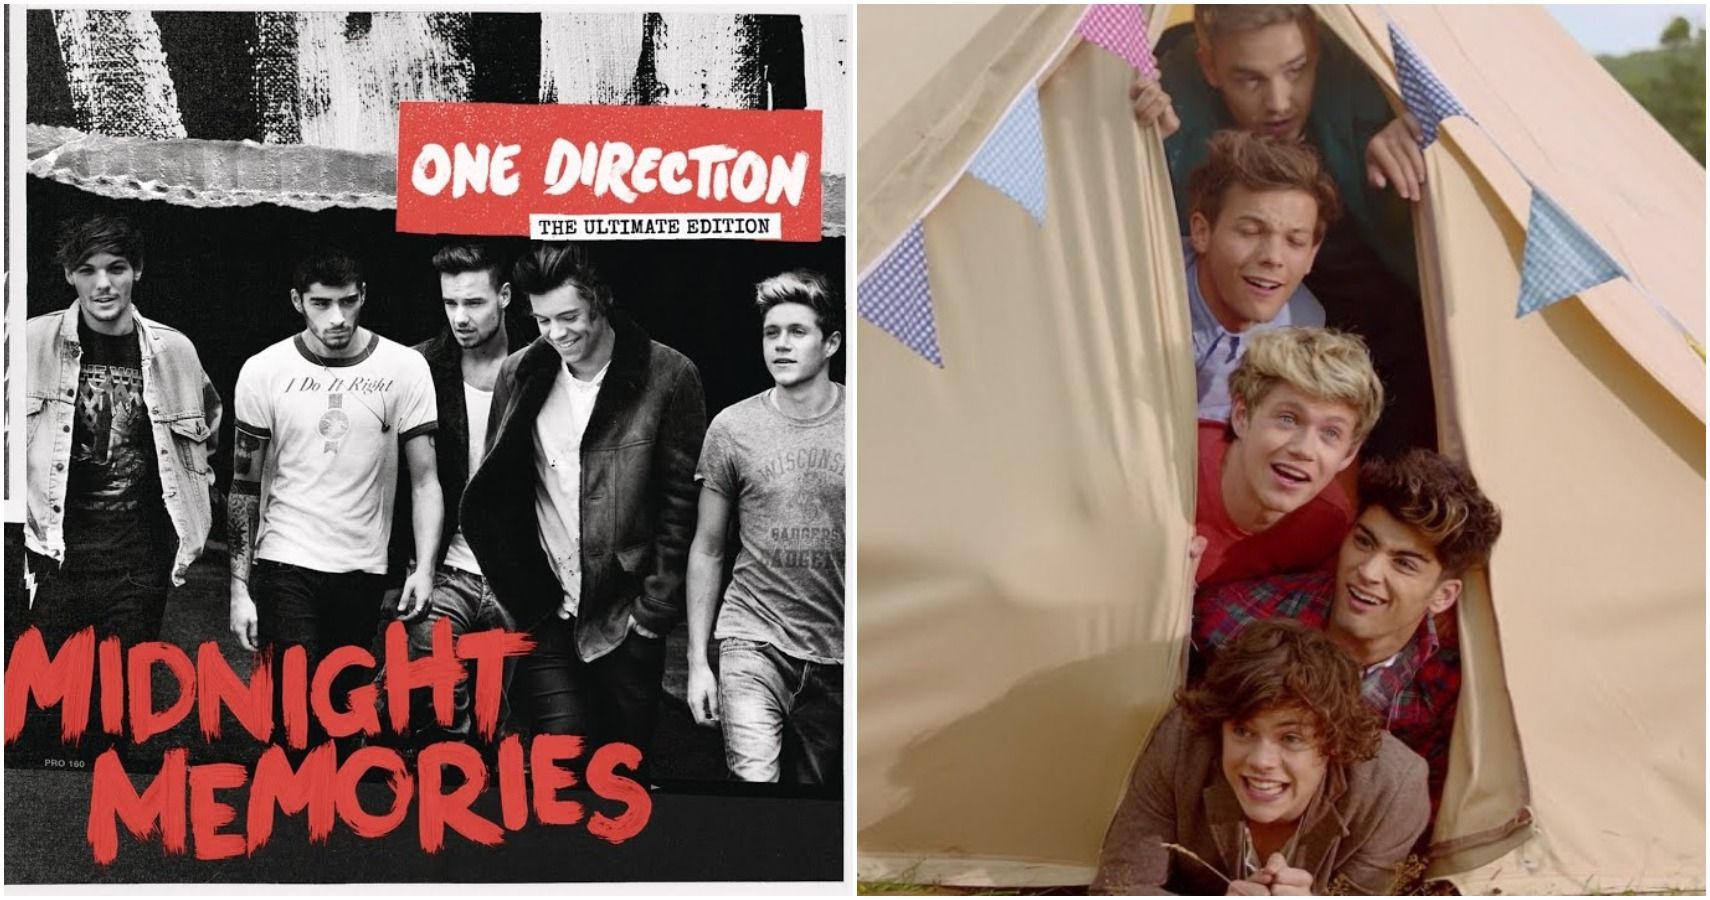 10 das melhores músicas do One Direction (de acordo com as visualizações do YouTube)